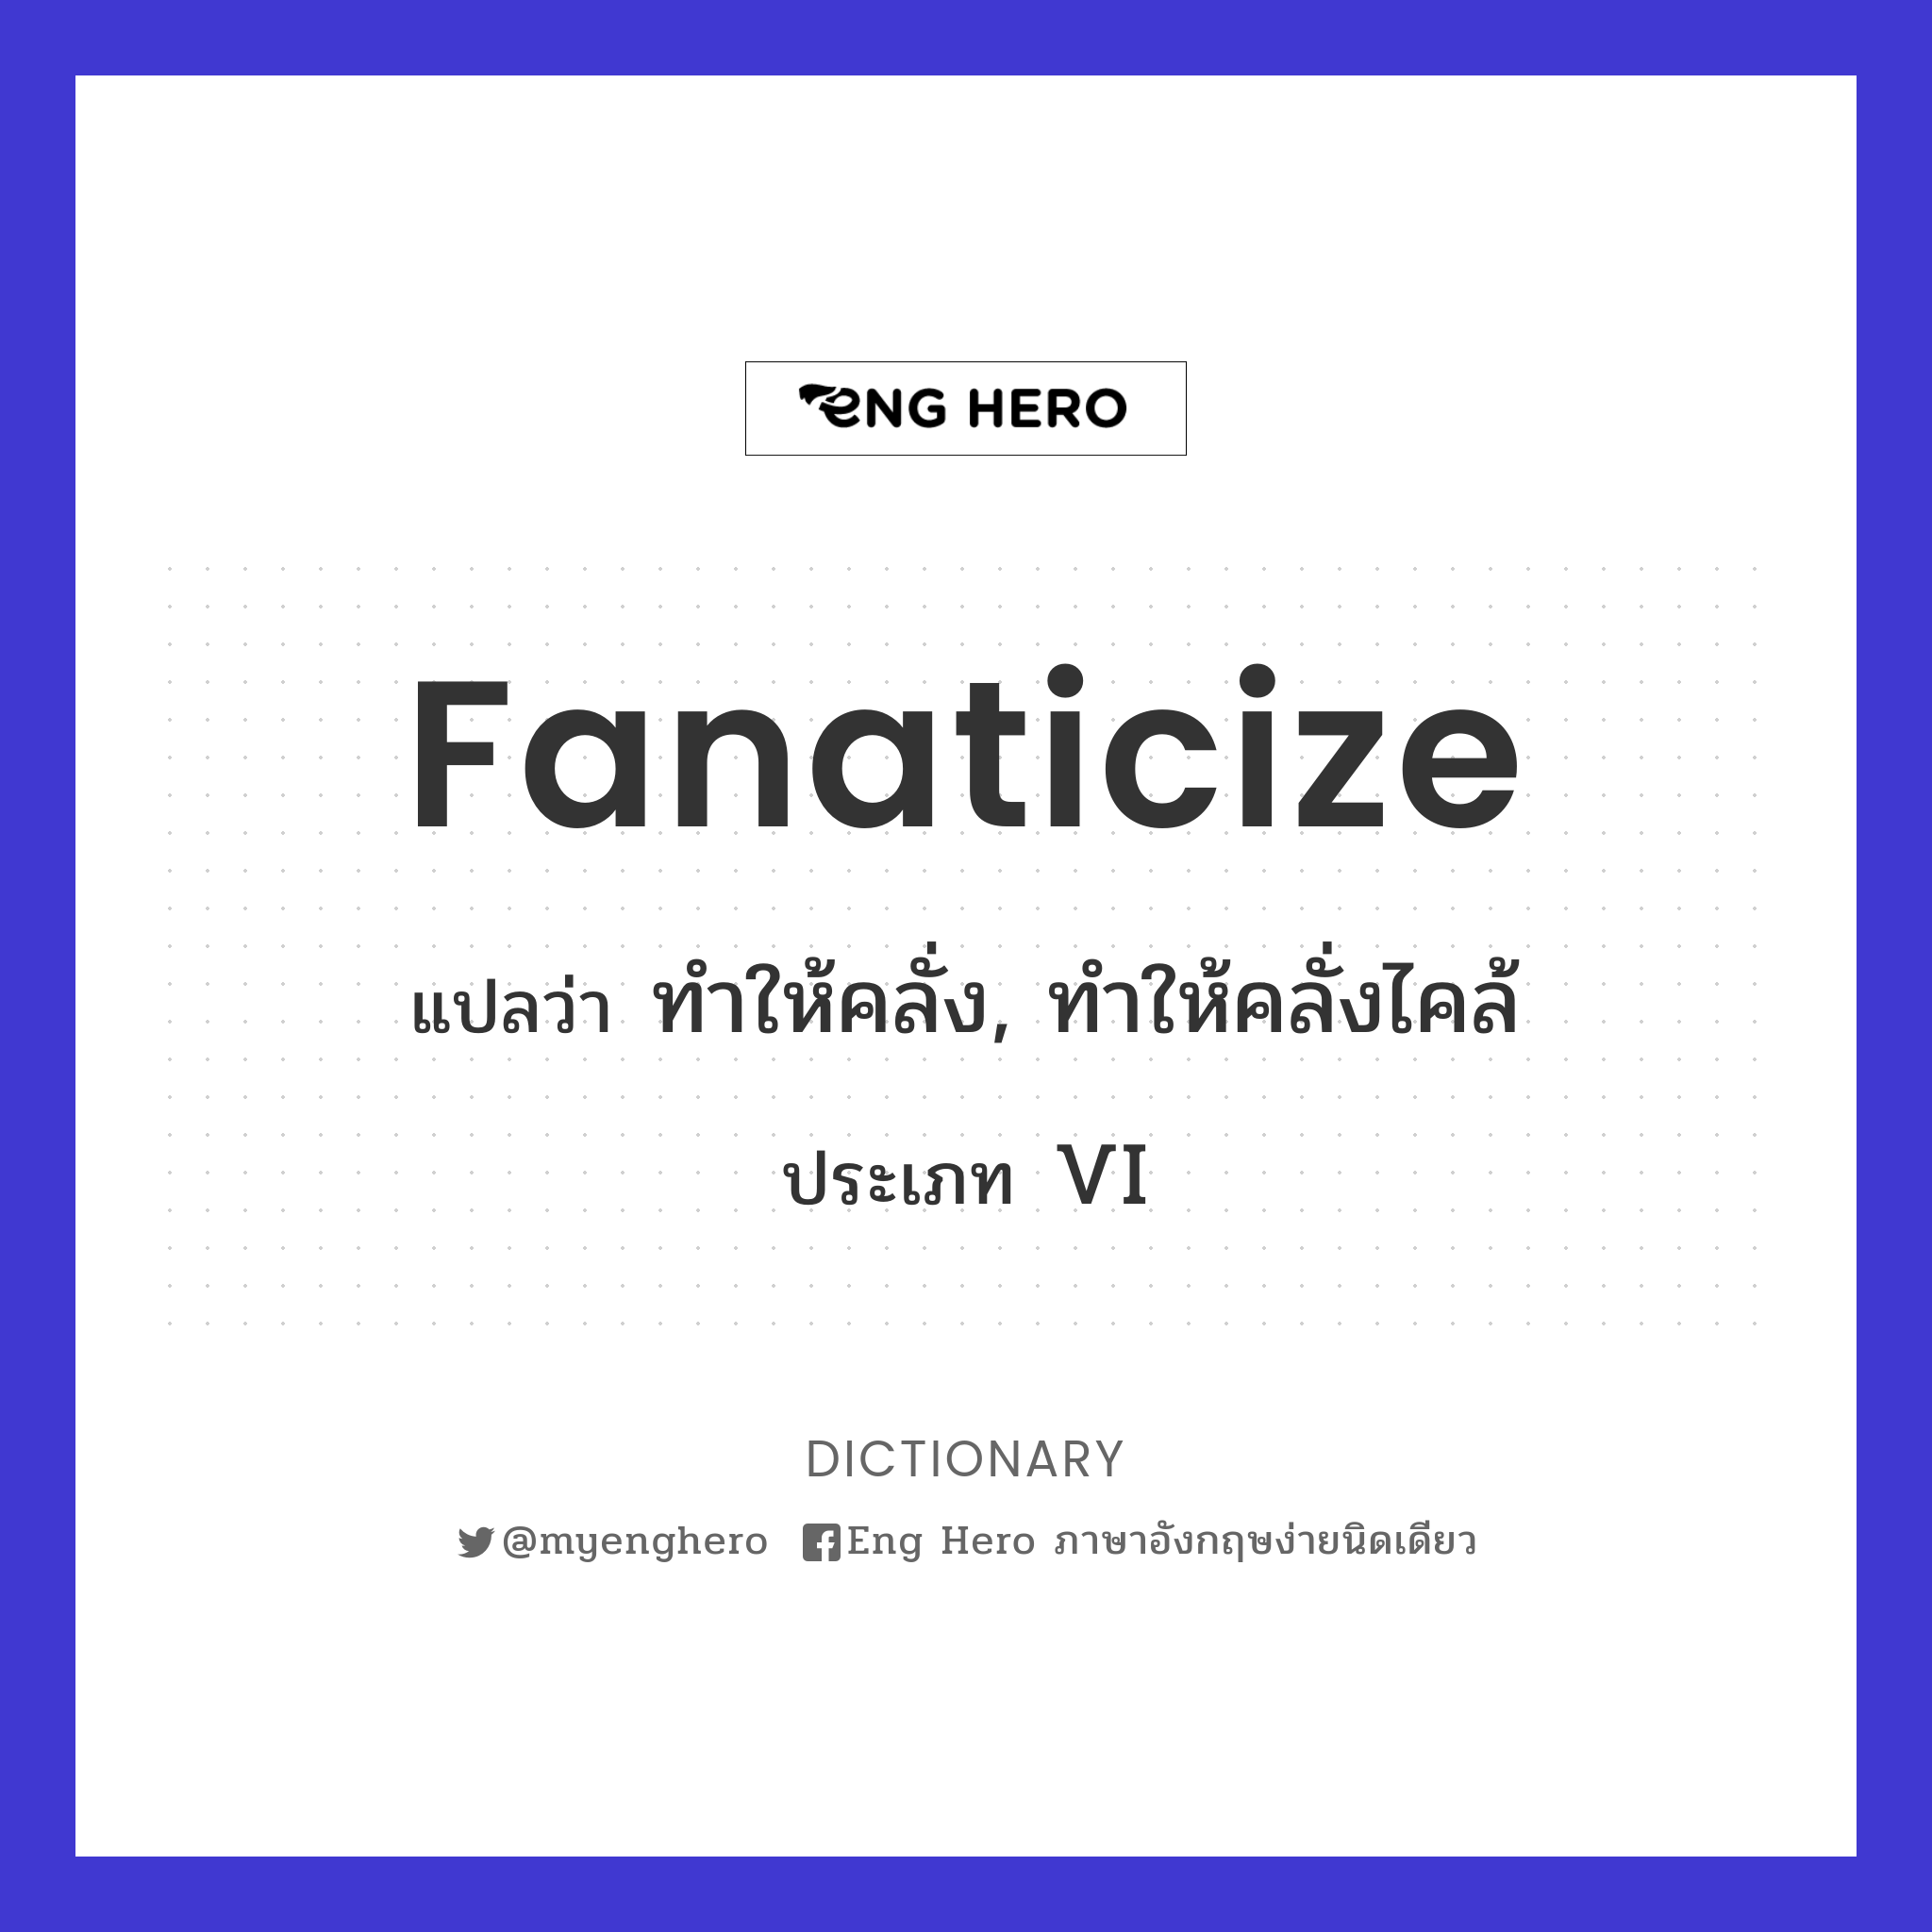 fanaticize